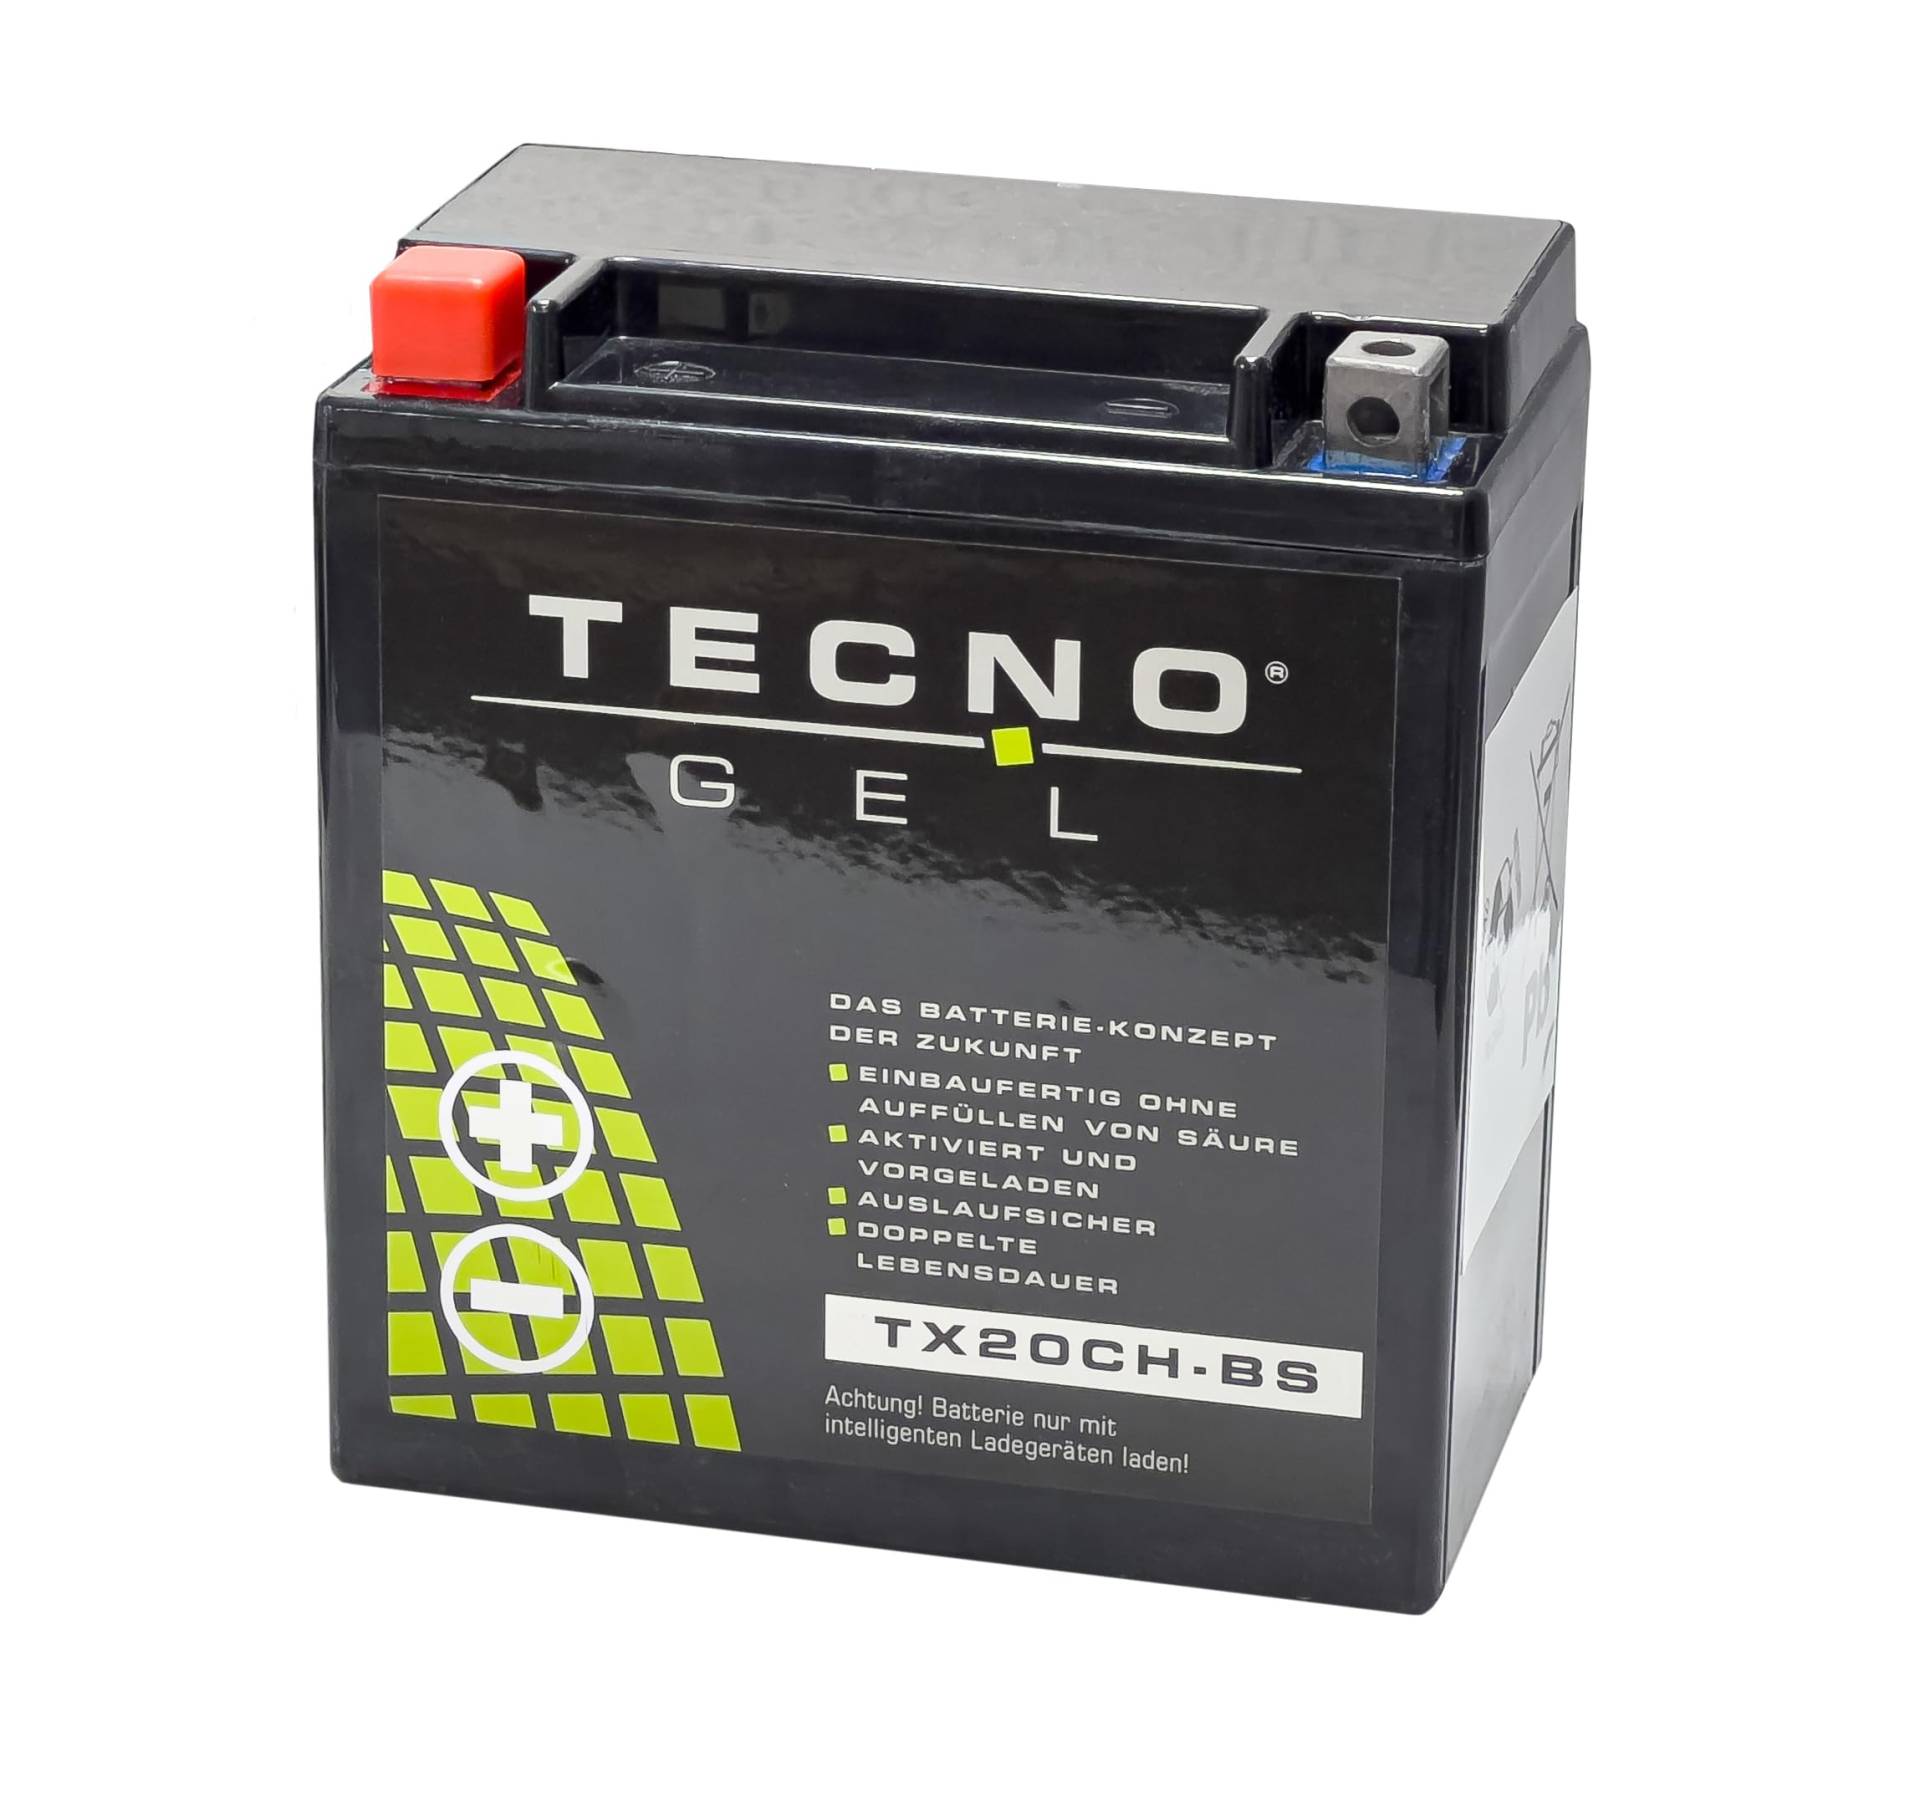 TECNO-GEL Motorrad-Batterie für YTX20CH-BS für SUZUKI LT-A 500/700/750 2004-2016, 12V Gel-Batterie 18Ah, 150x87x161 mm von Wirth-Federn